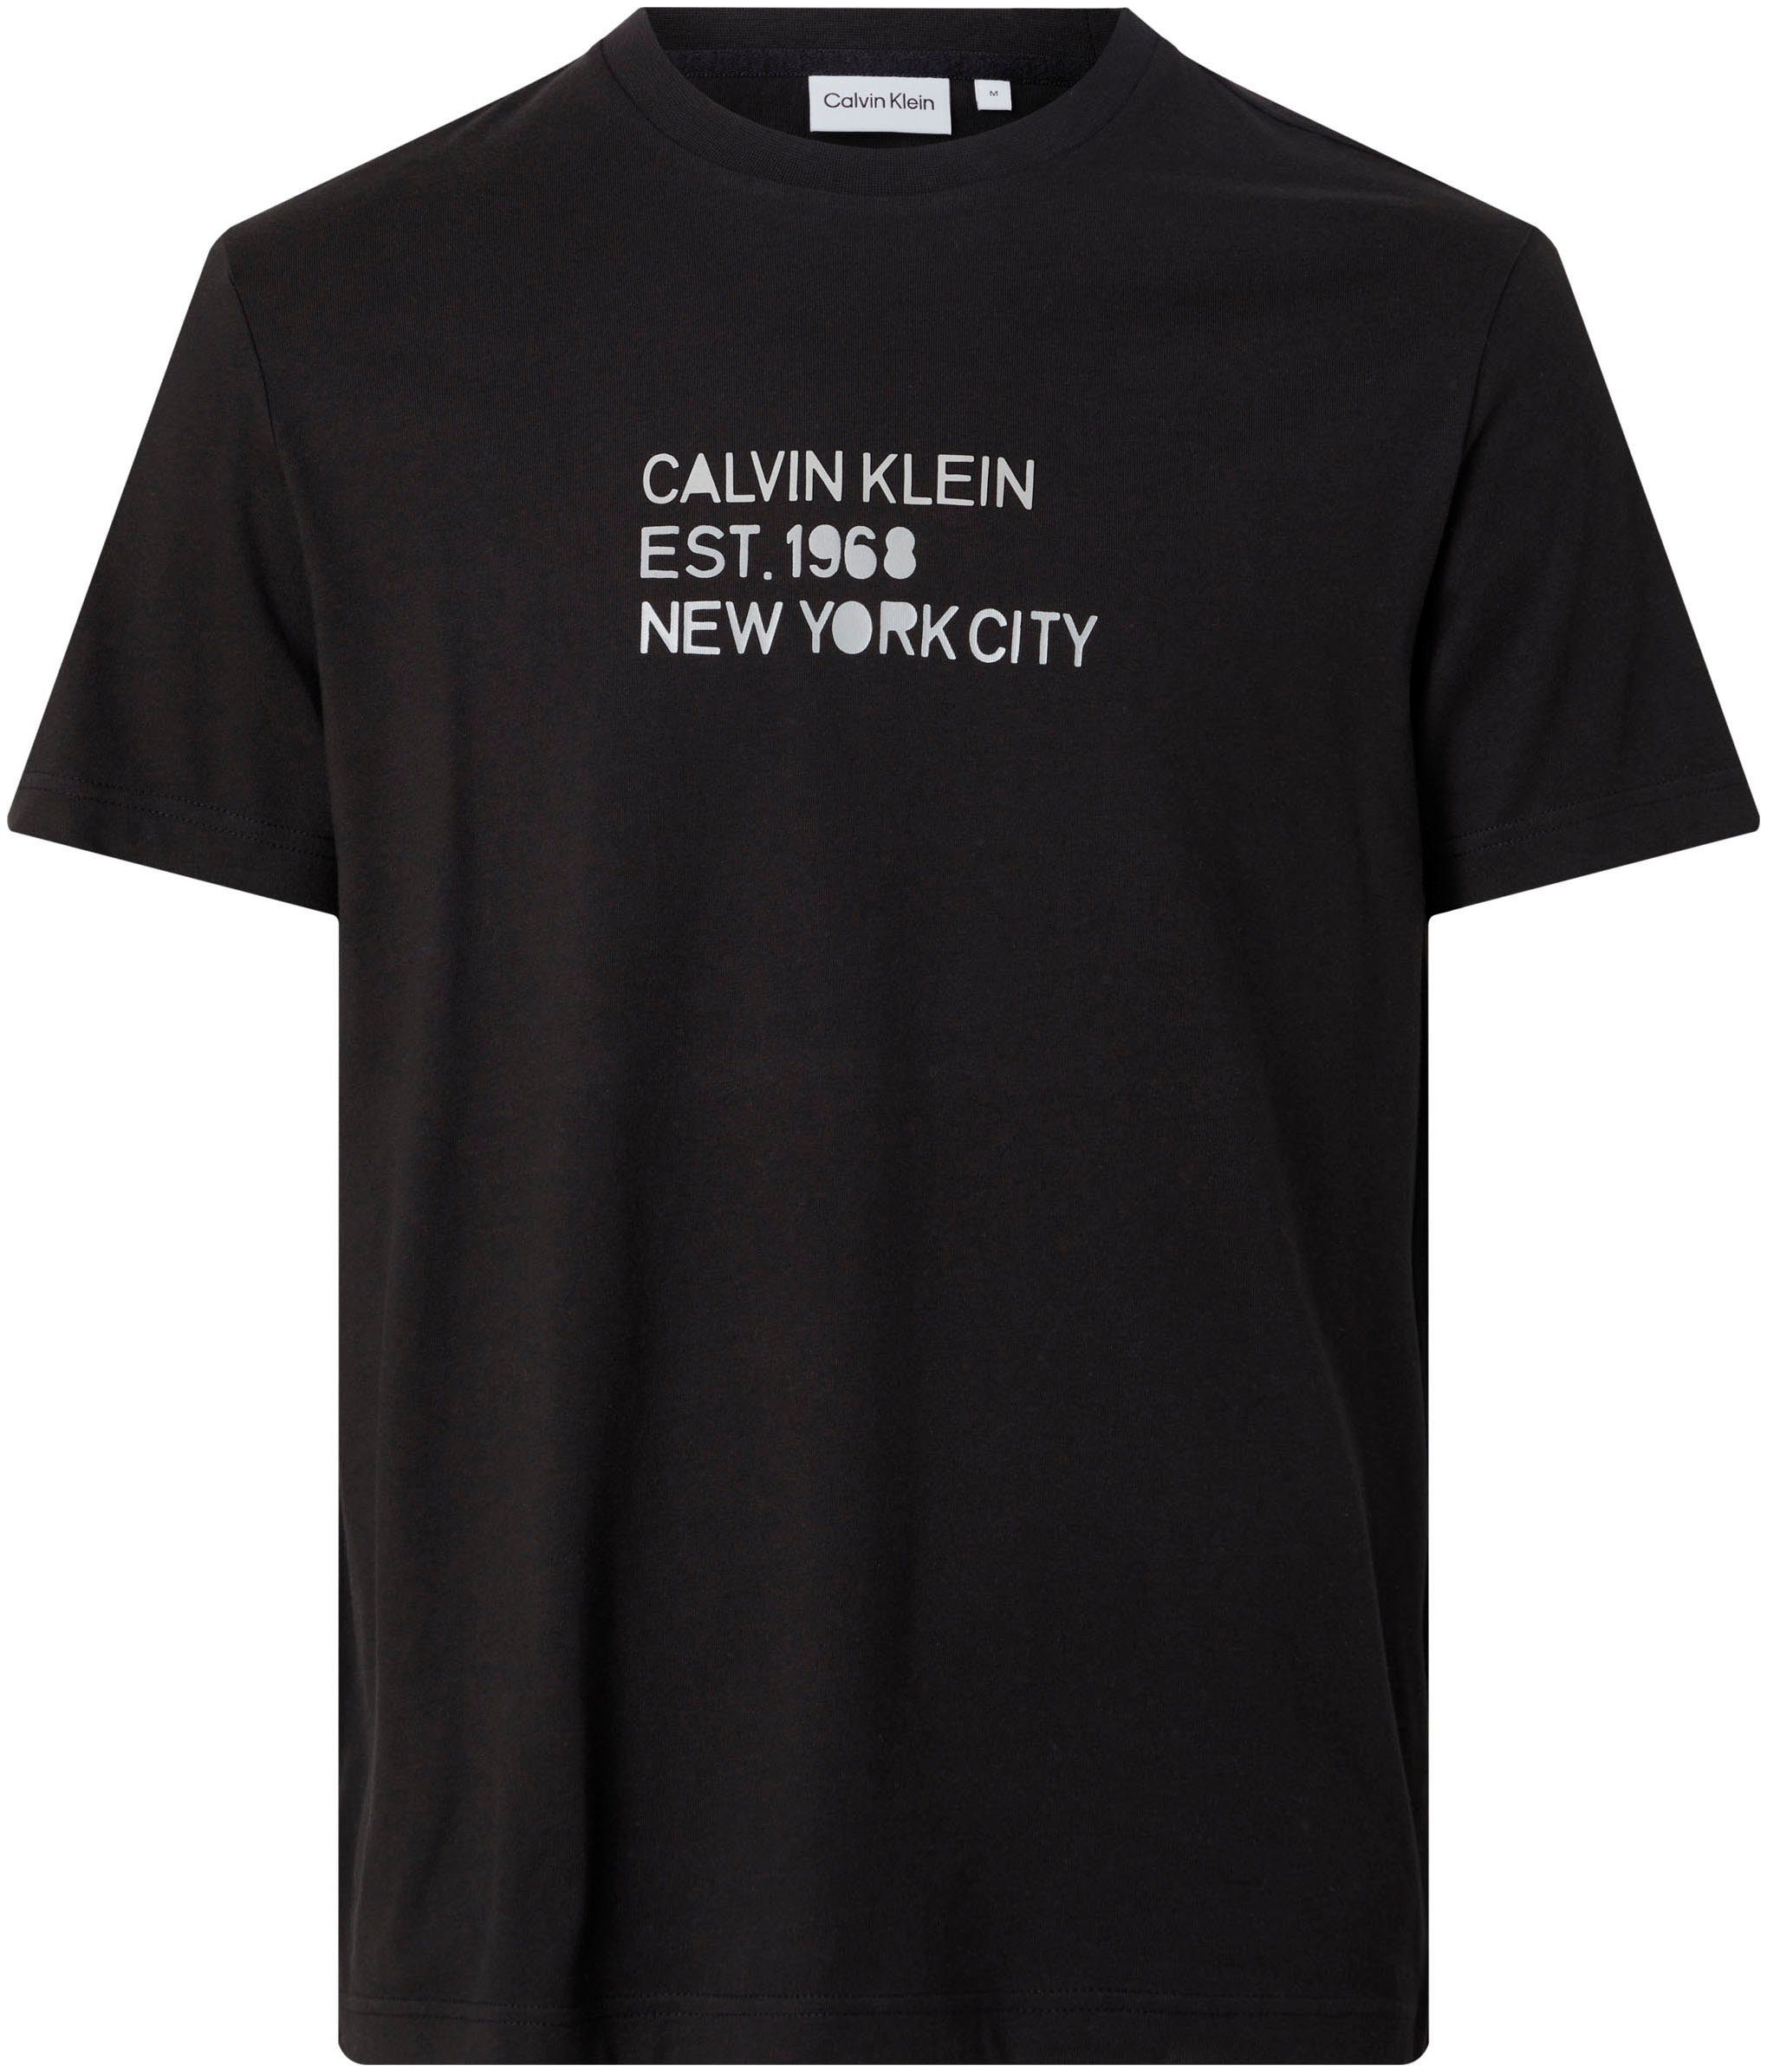 LOGO MIXED T-Shirt STENCIL Klein Calvin T-SHIRT PRINT